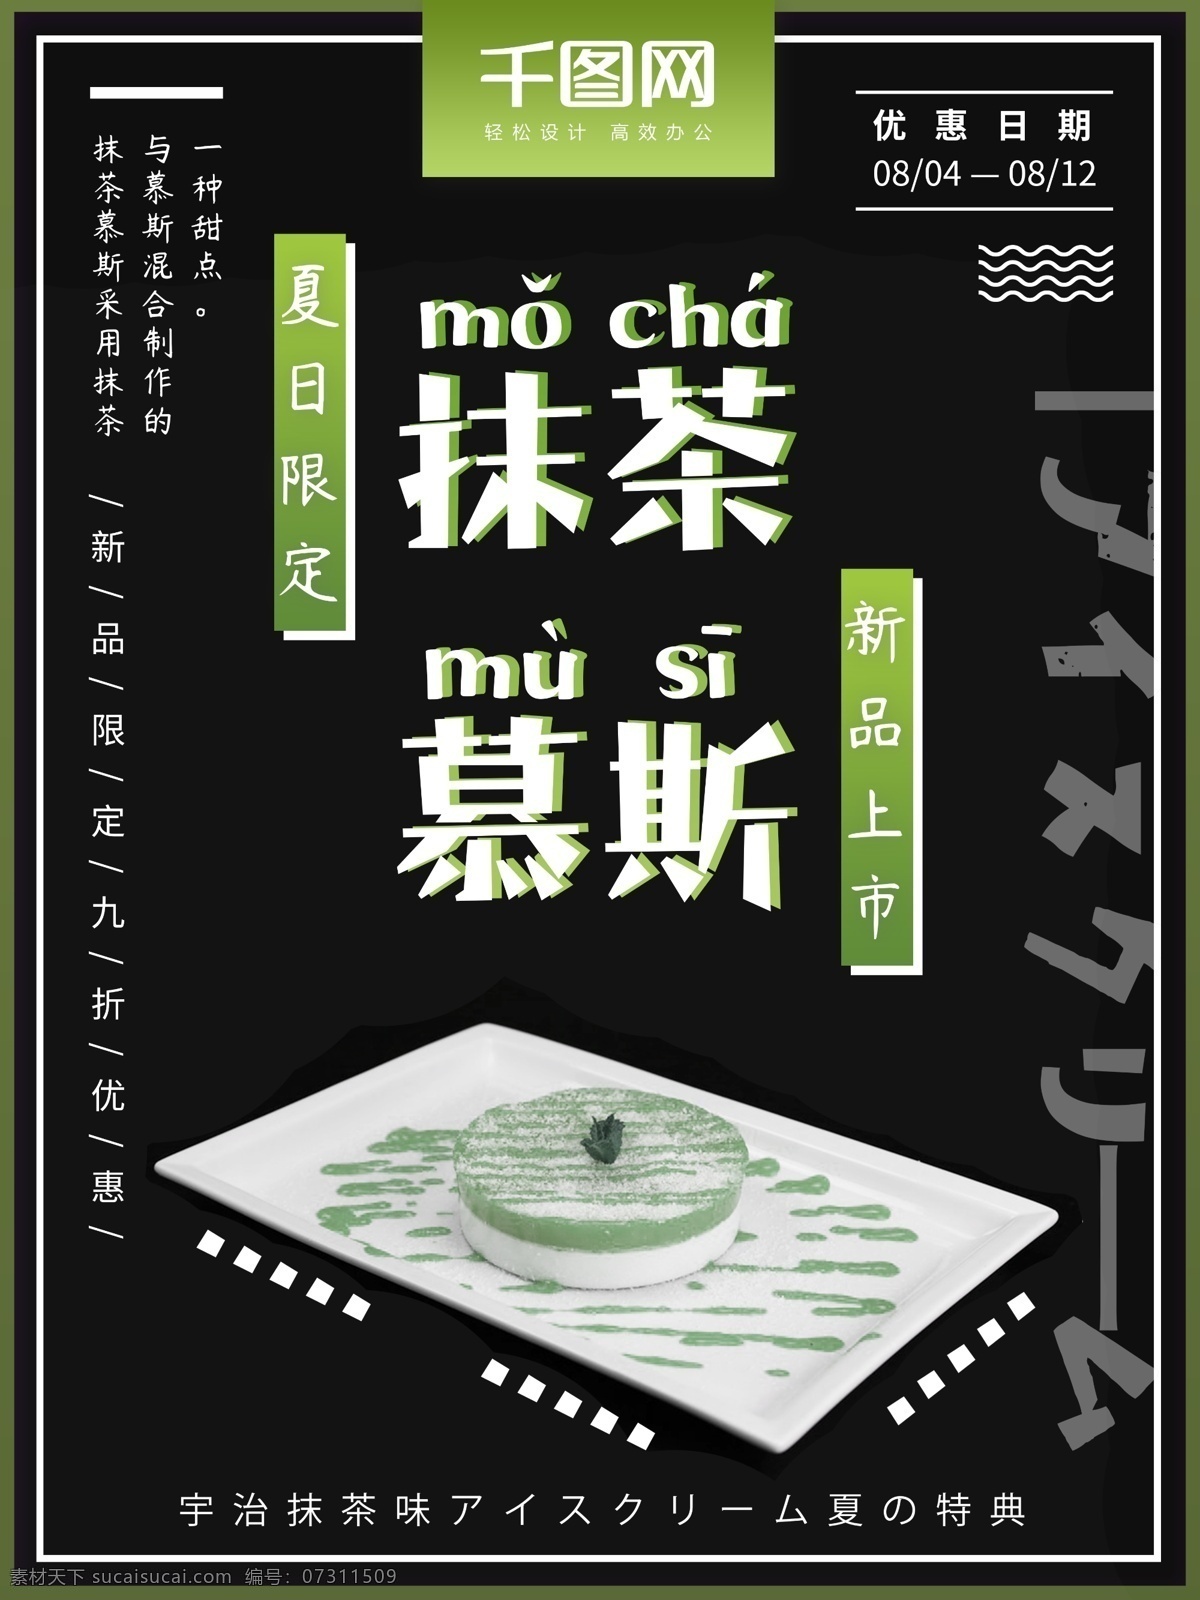 日 系 抹 茶 慕 斯 甜品 促销 海报 黑色 绿色 日系 简约 抹茶 甜品促销 抹茶慕斯